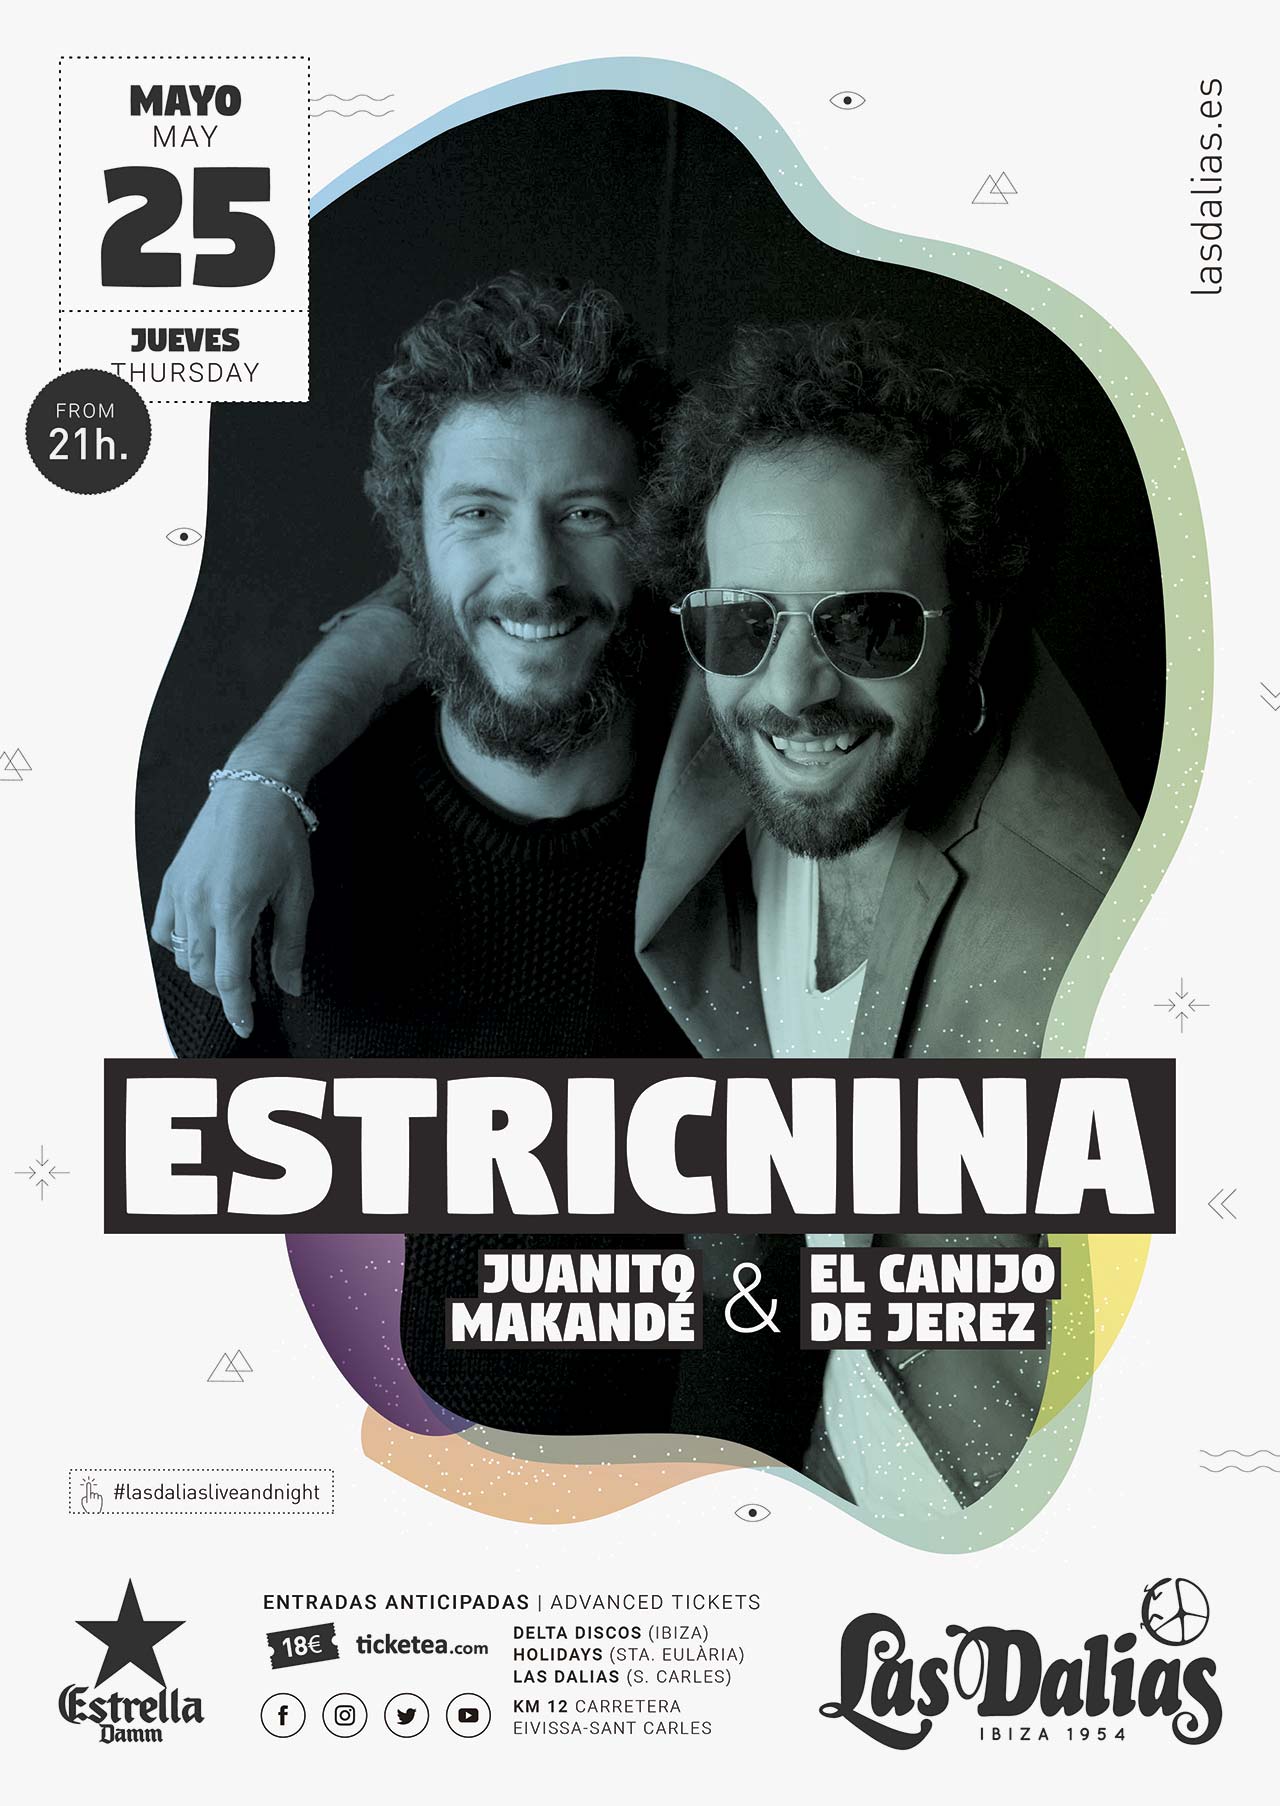 Estricnina - Las Dalias - Cartel